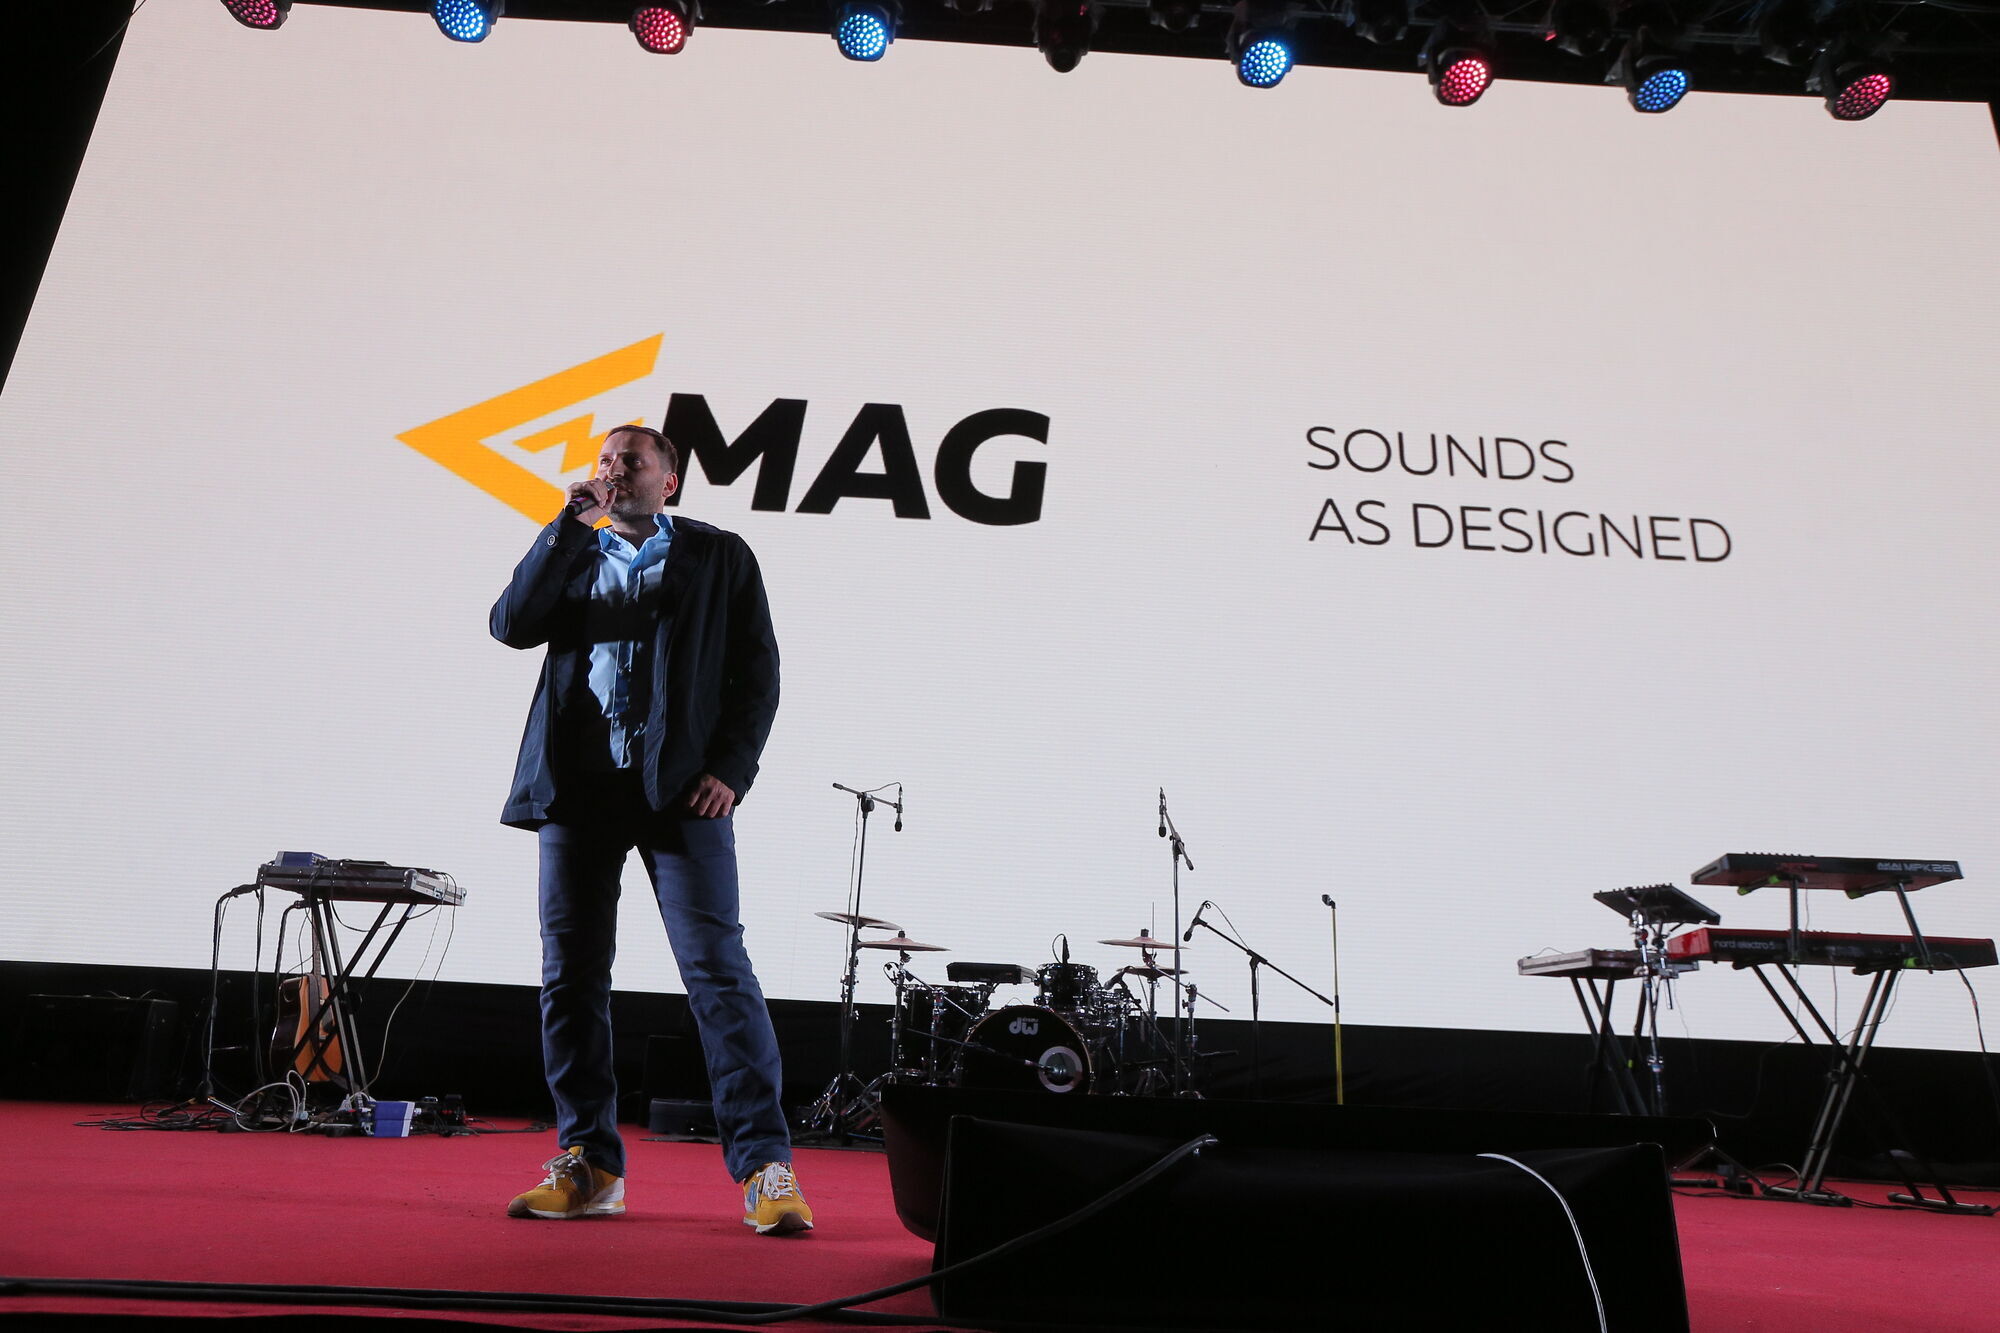 Хасін повідомив, що звук компанії MAG Audio було обрано офіційним для Міжнародного Канського фестивалю.